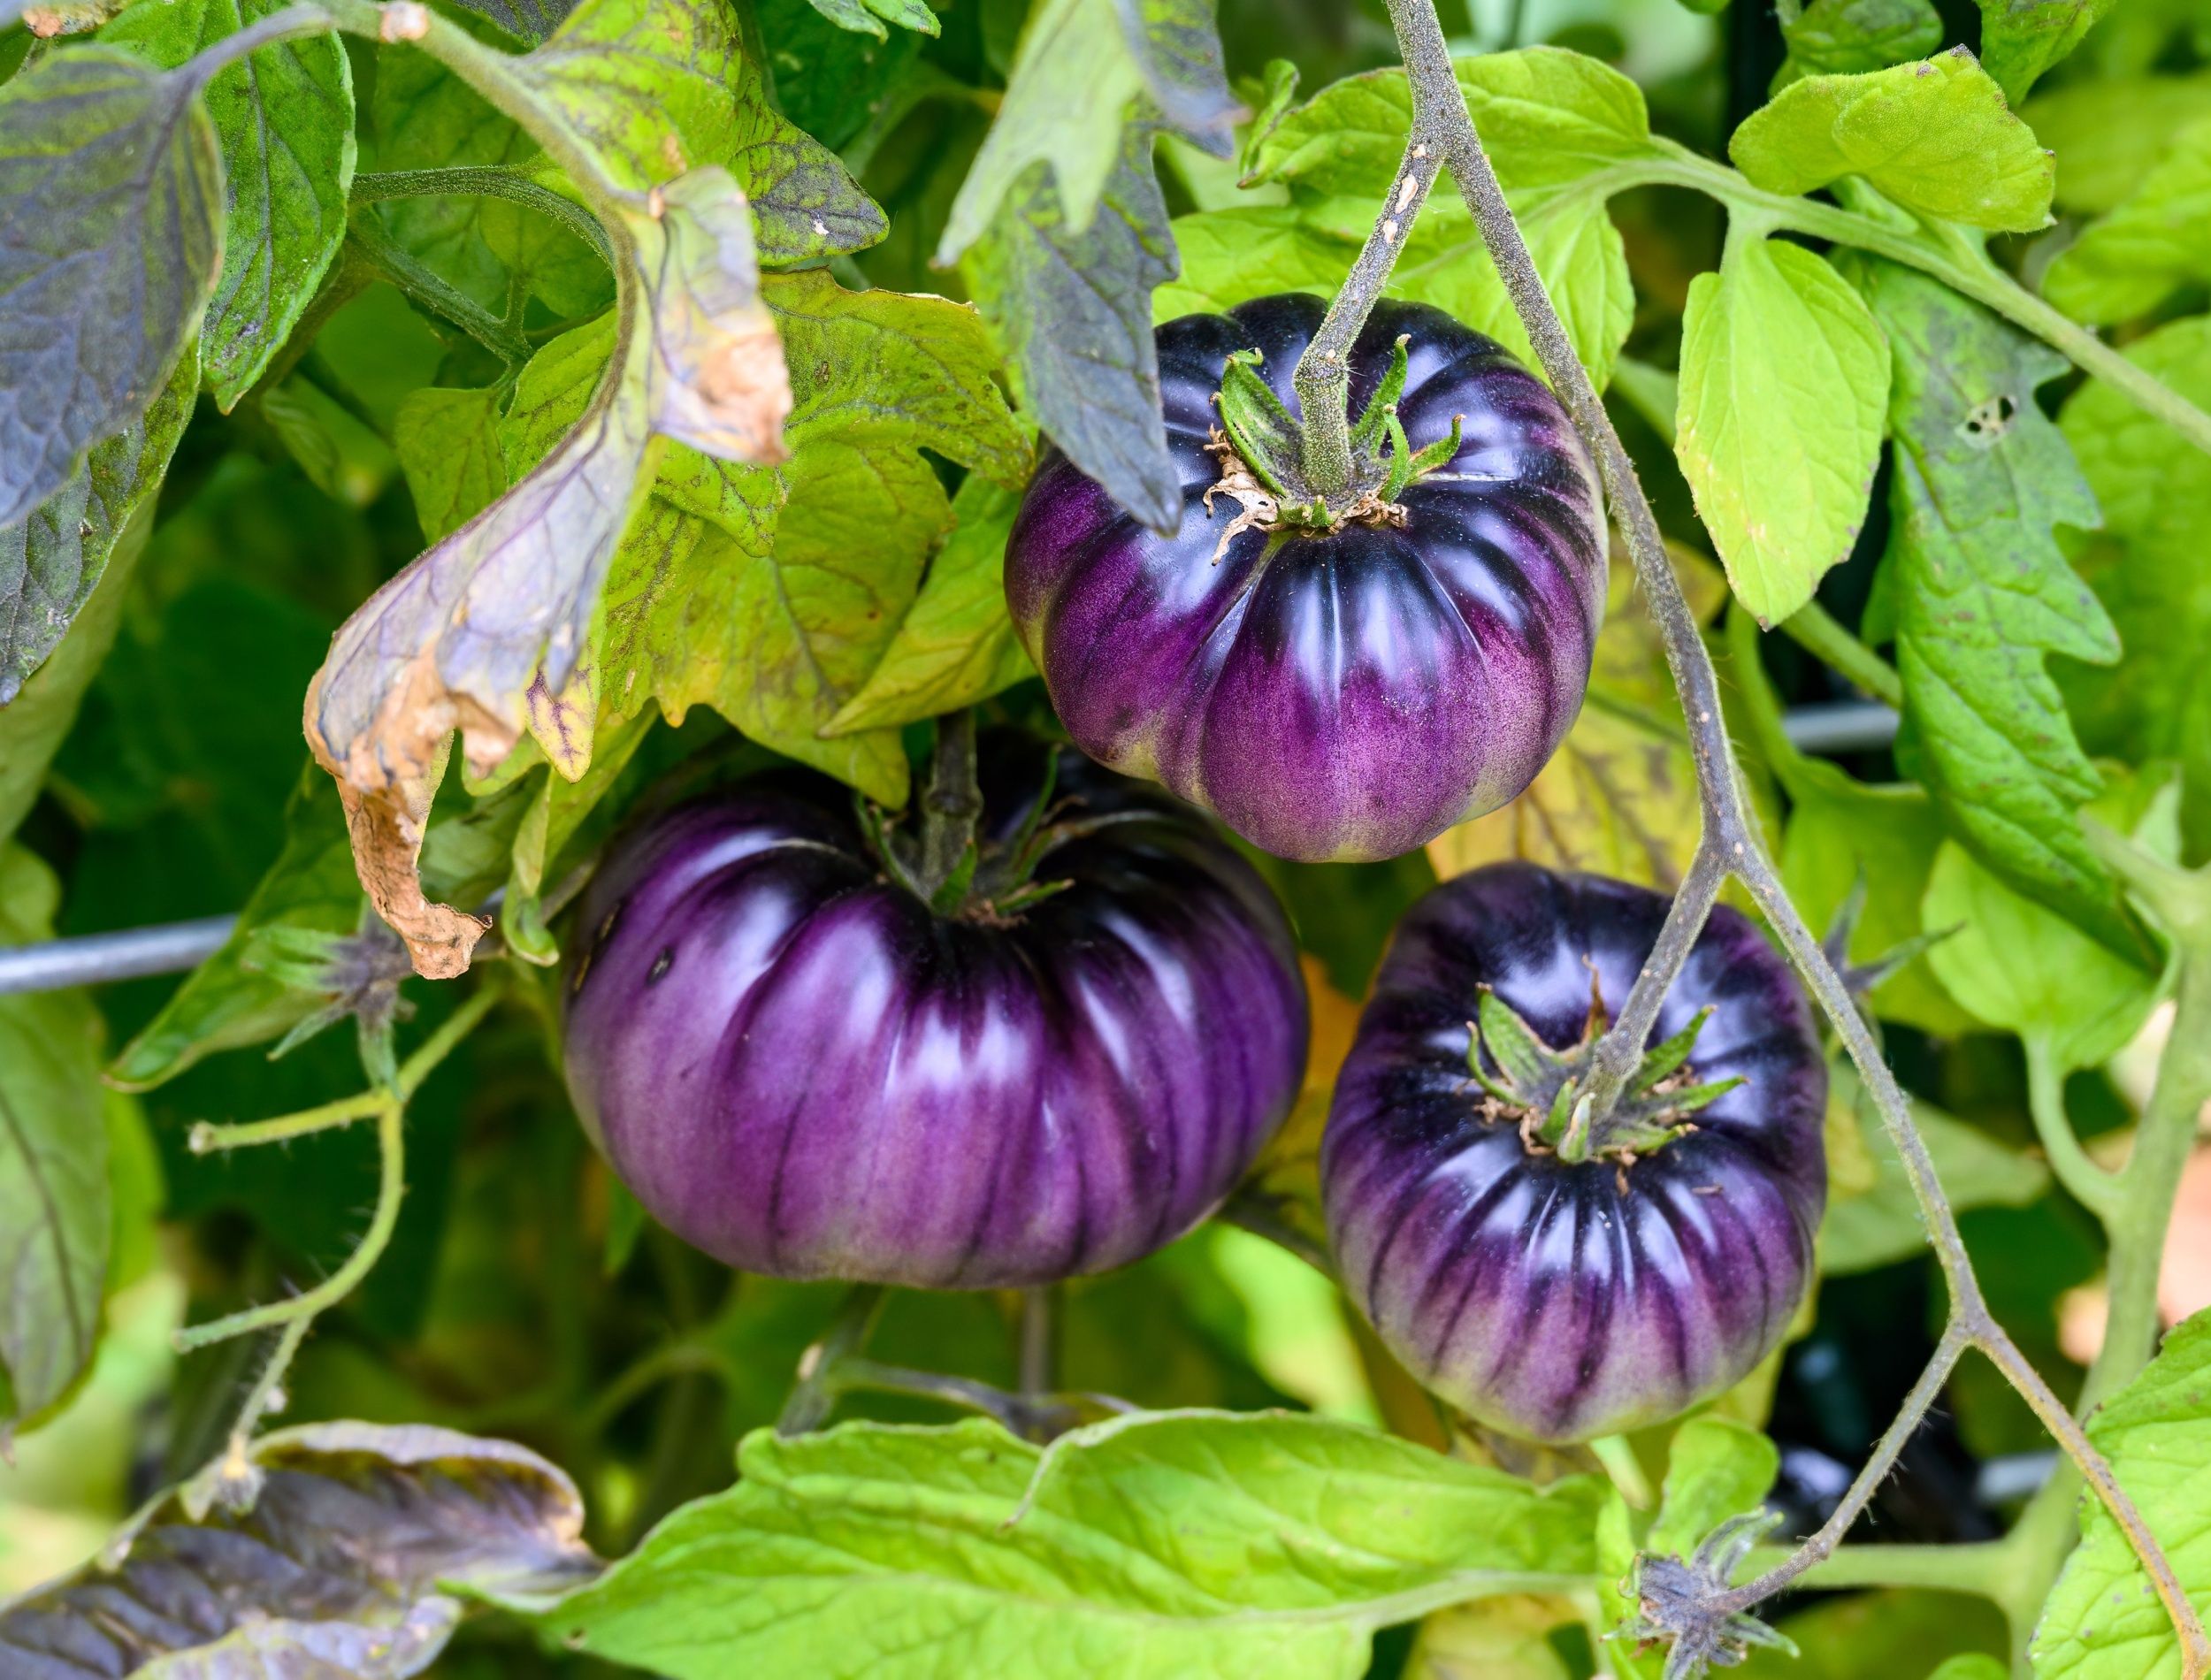 purple tomatoes on the vine